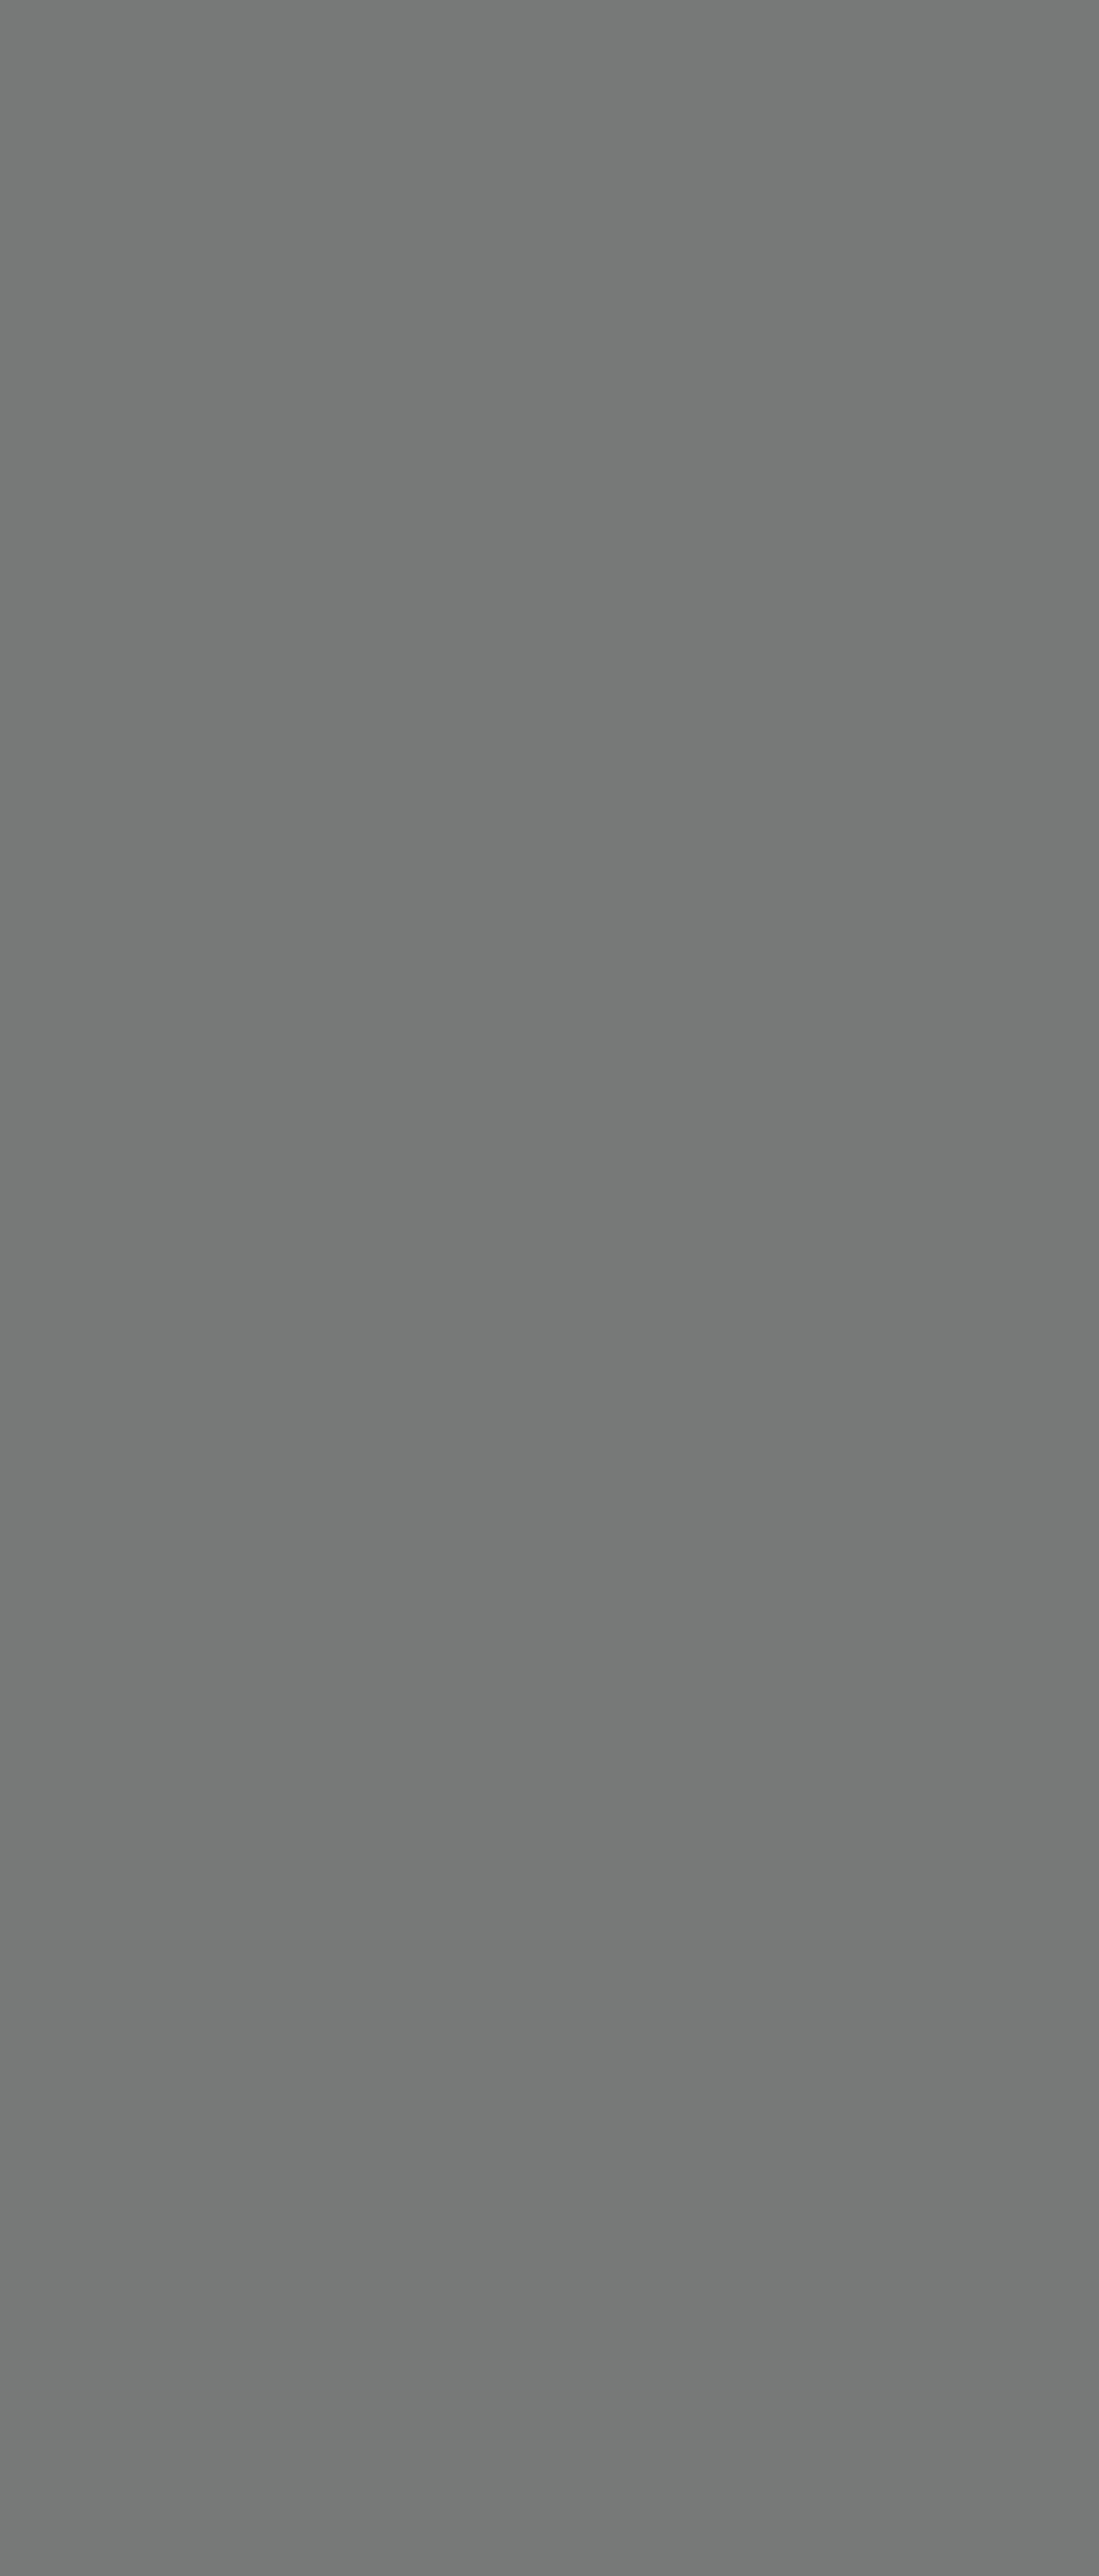 М. Нестеров. Святая Варвара (эскиз). 1890-е. Москва, Музей музыкальной культуры им. М.А. Глинки